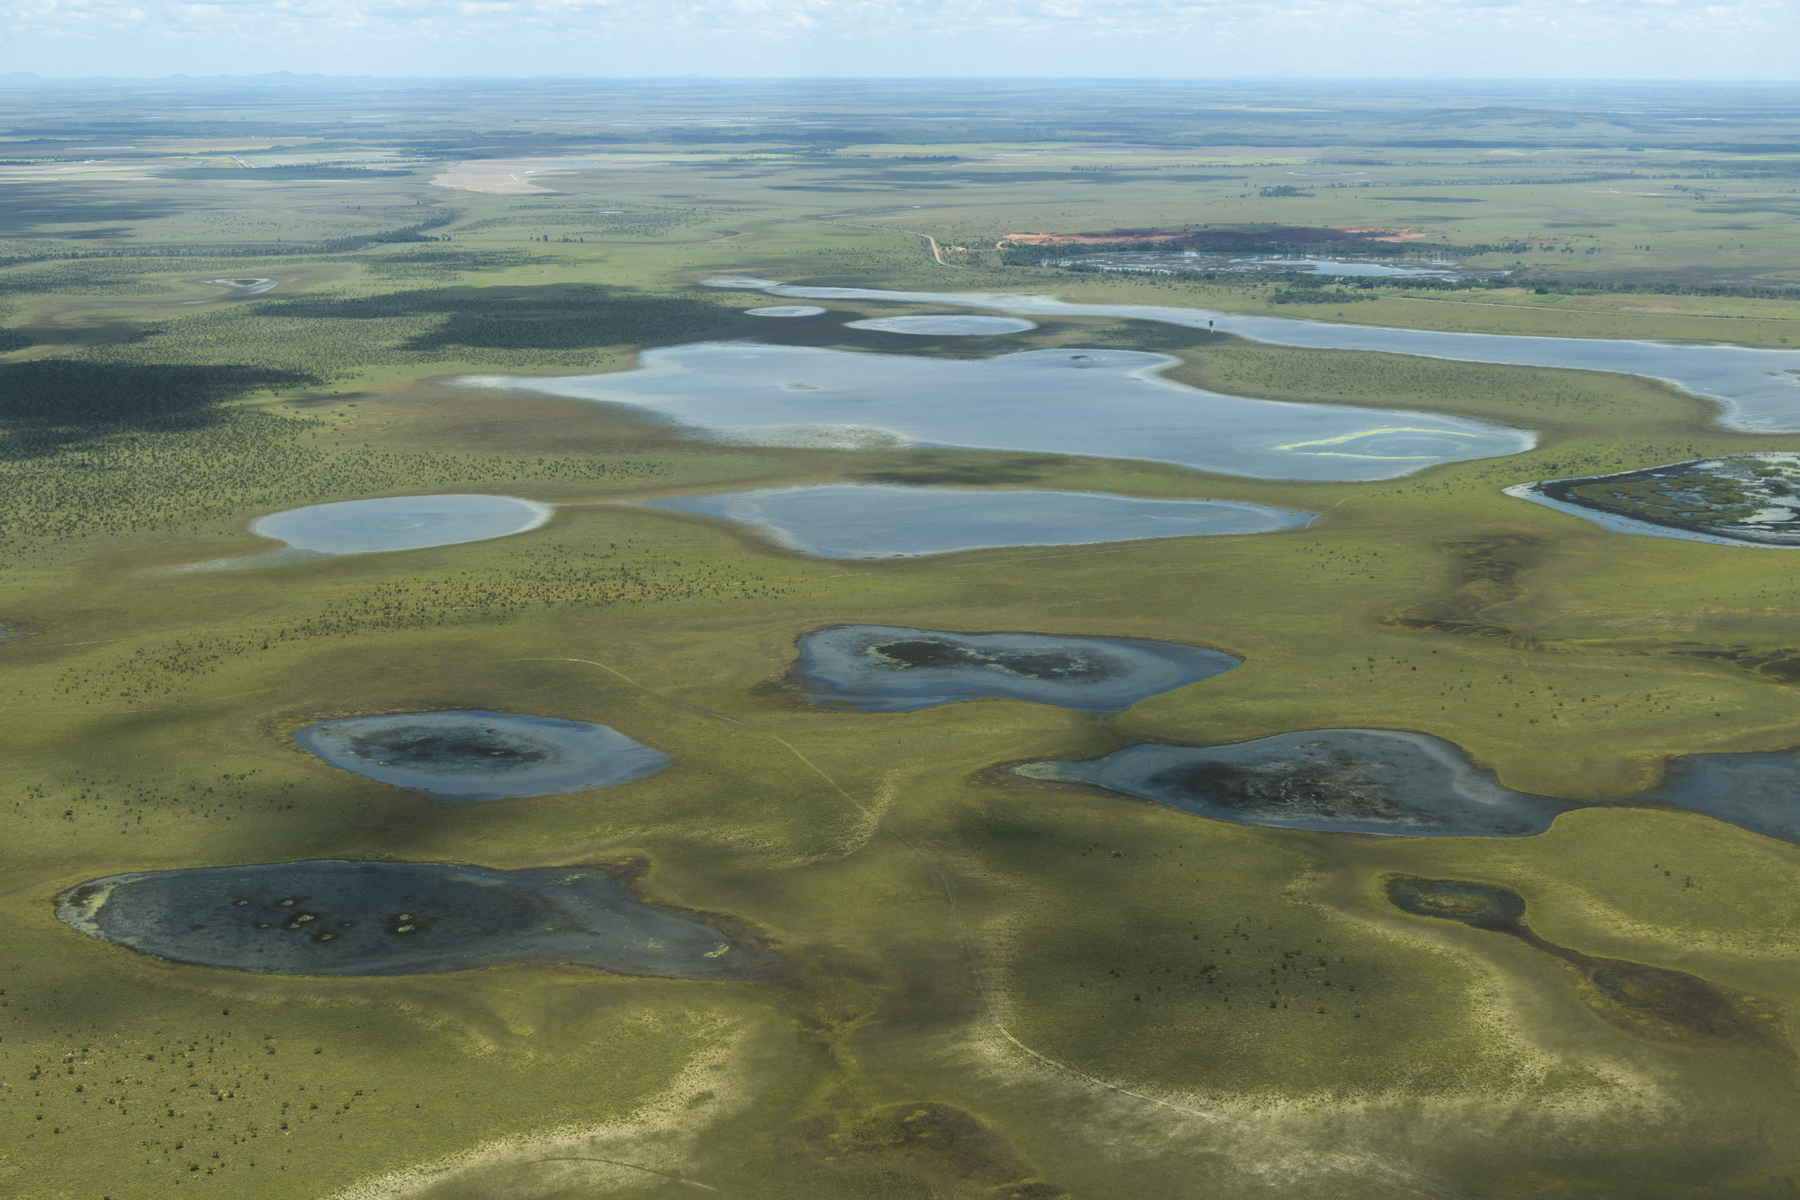 Fotografia A. Vista aérea. Área plana com lagos dispersos e em diferentes tamanhos.